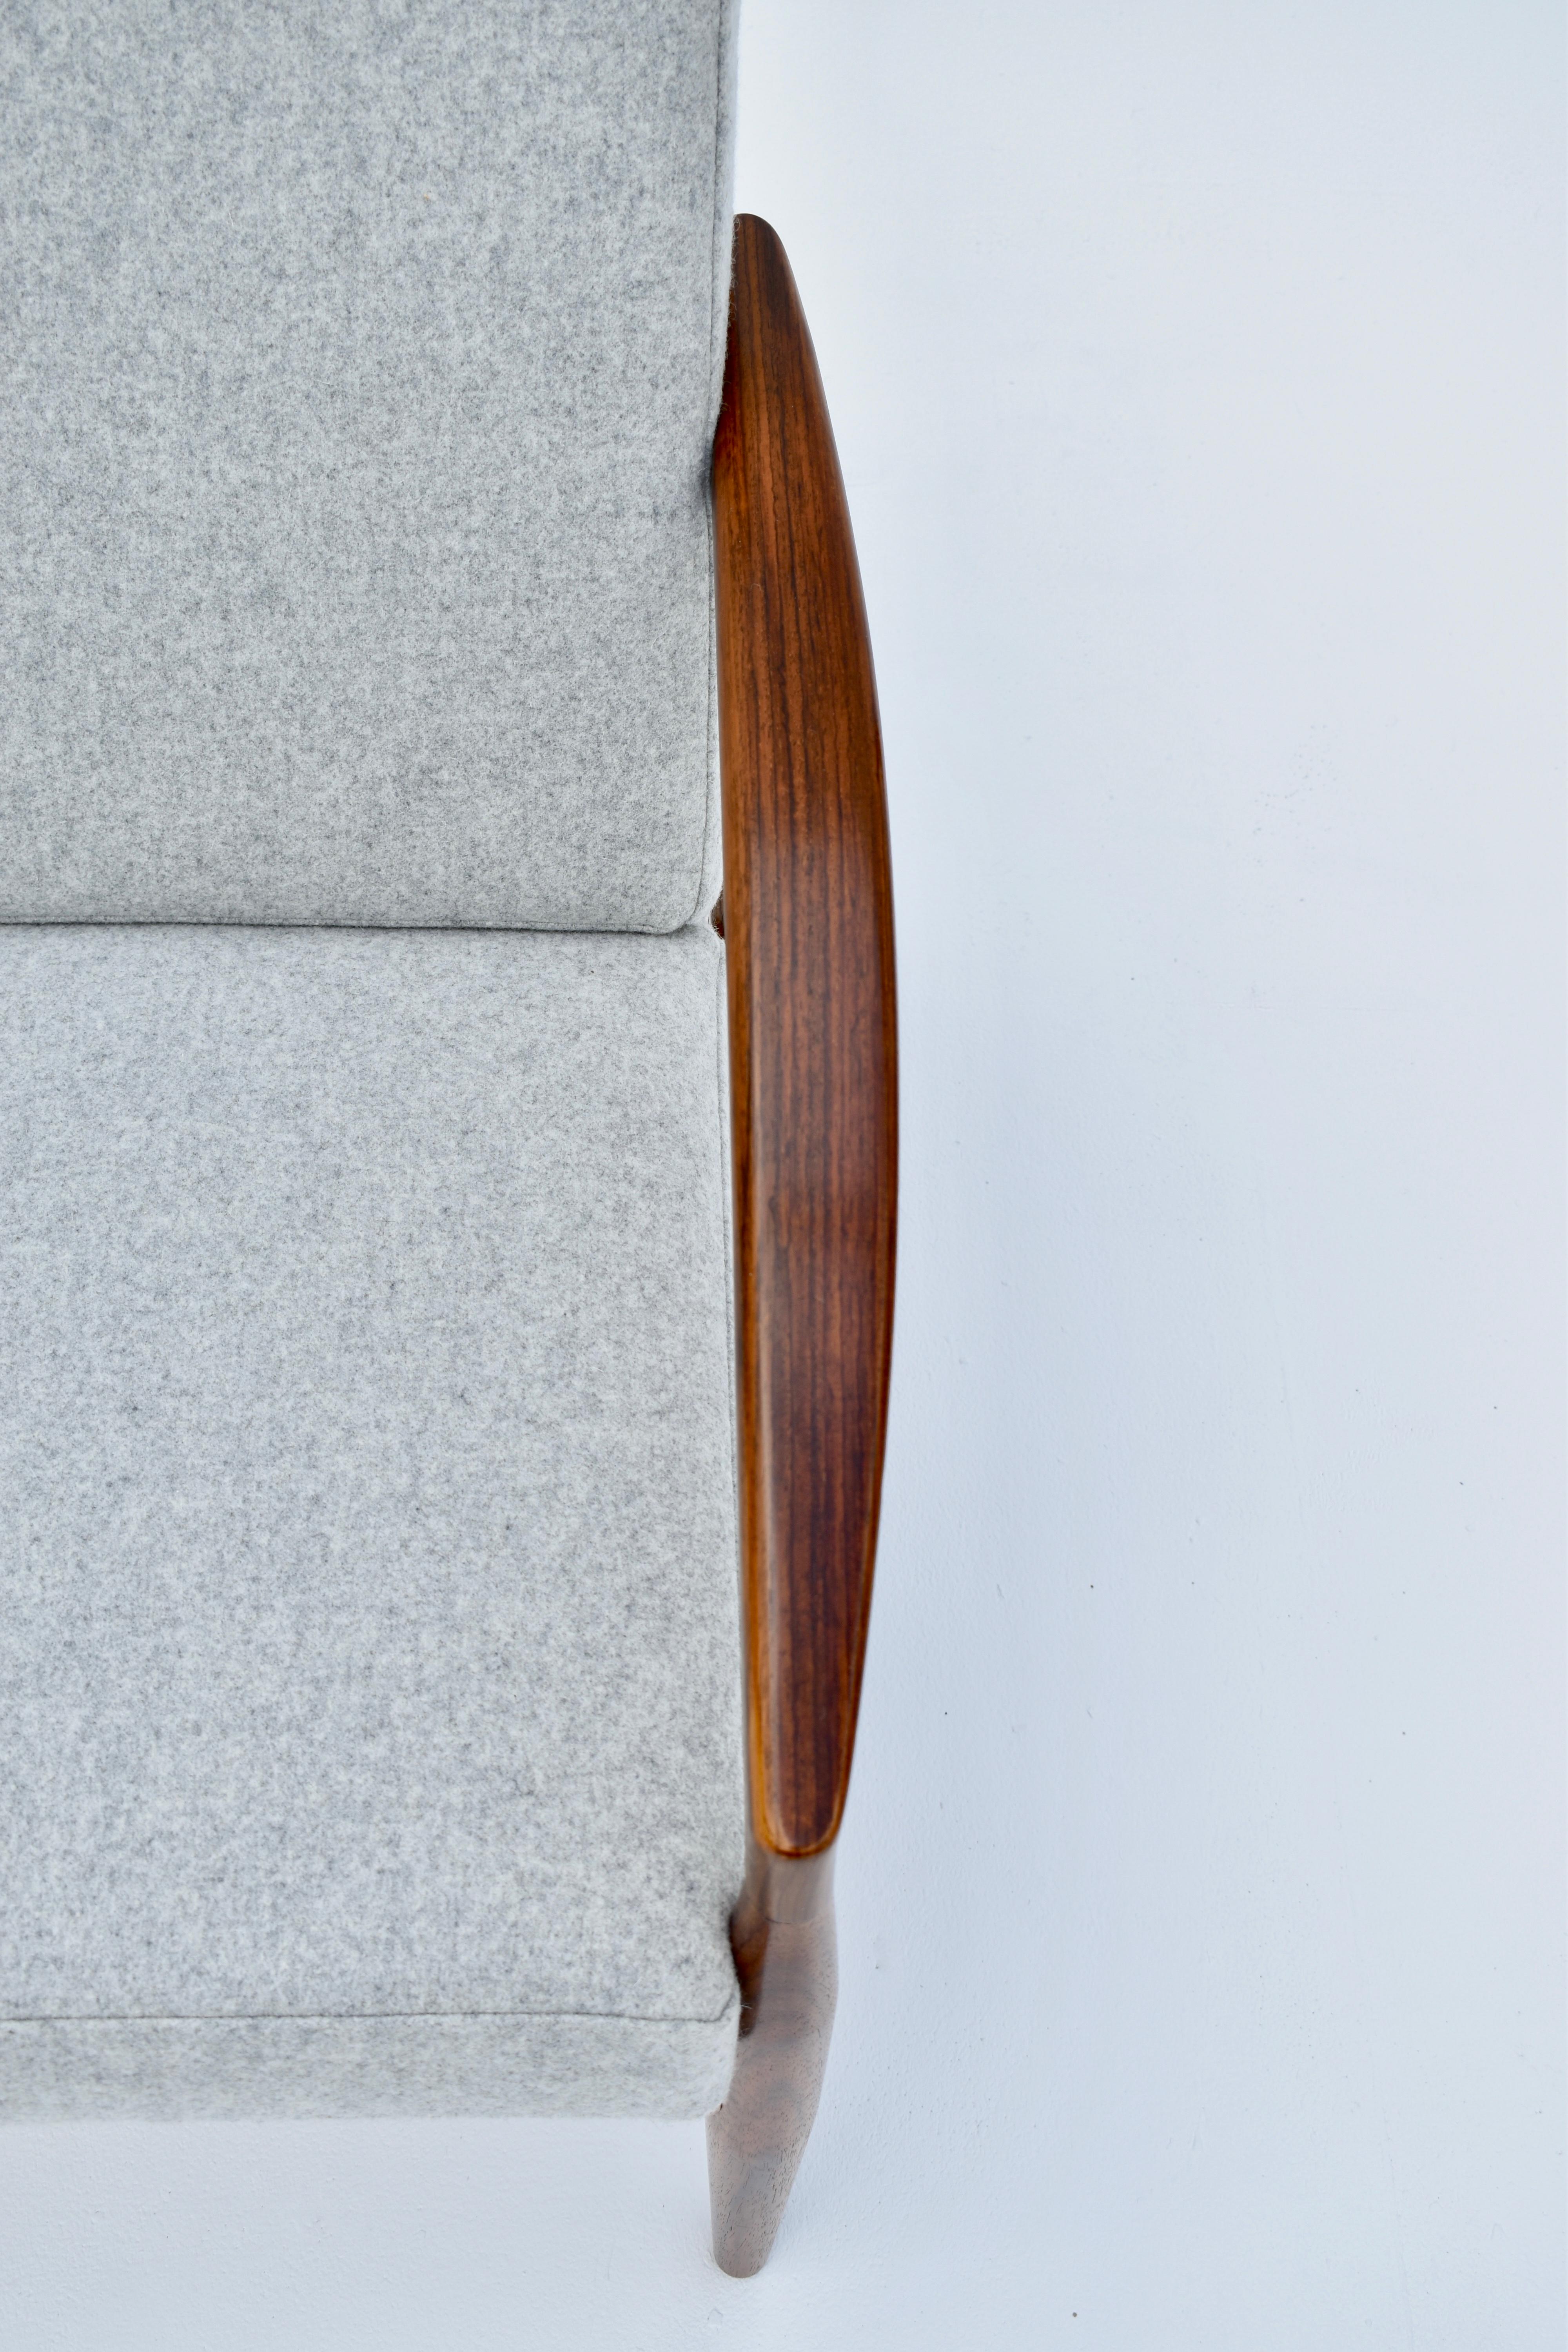 Kai Kristiansen Model 121 'Paperknife' Chair in Rosewood For Magnus Olesen 8